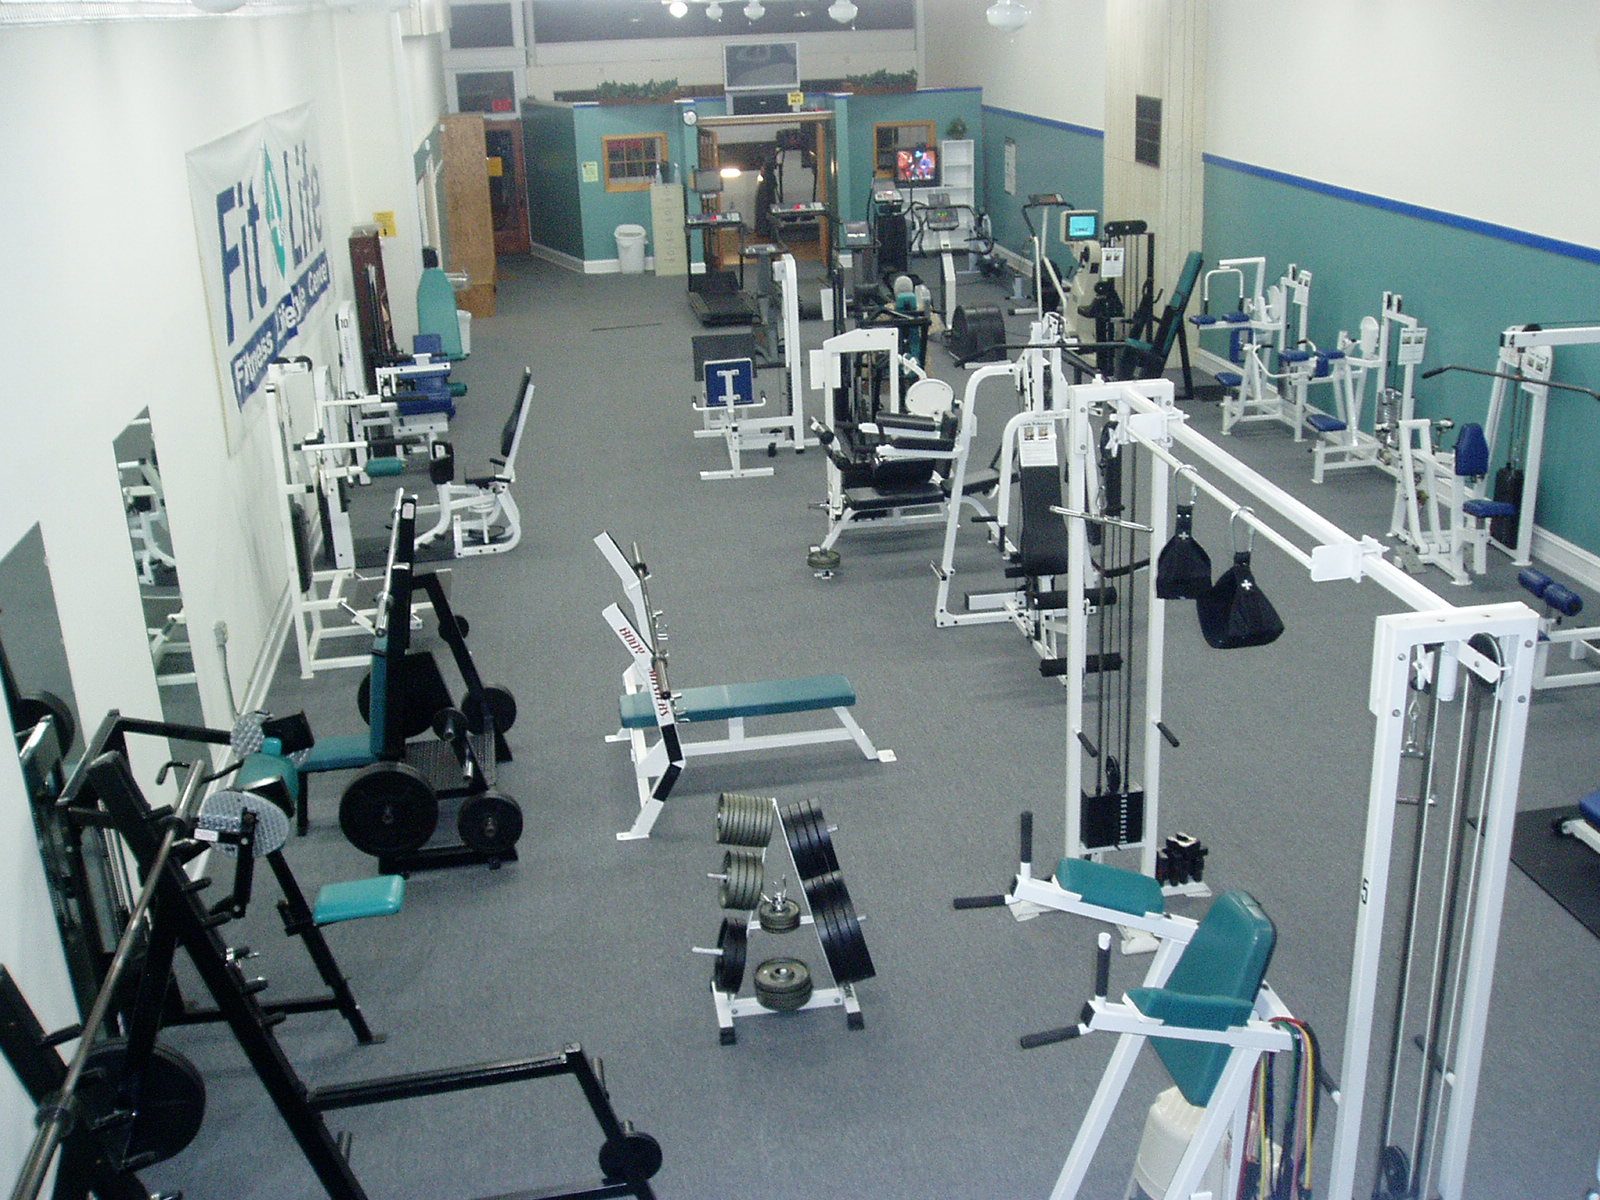 Hillsboro Fitness Center